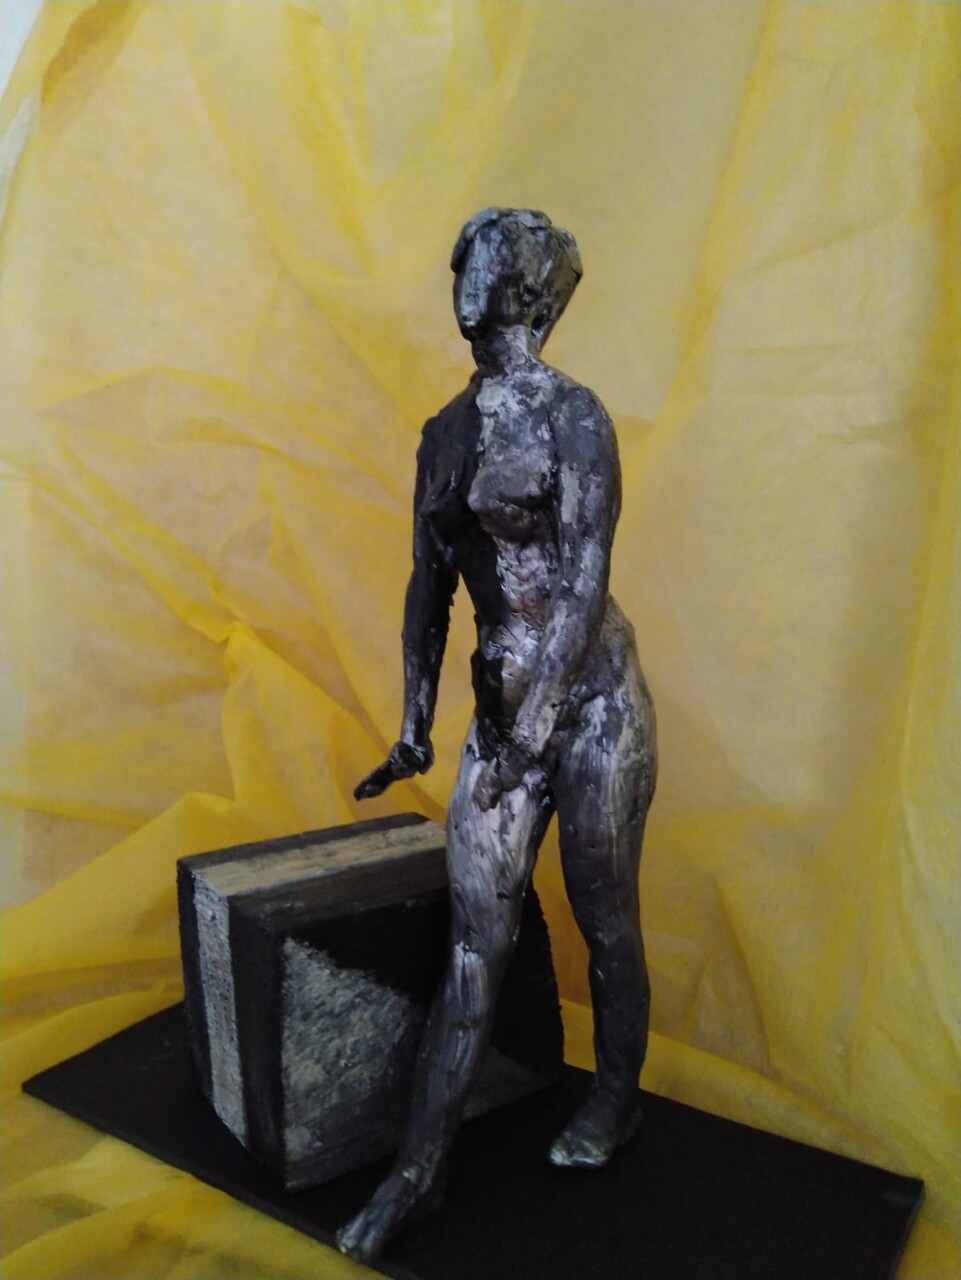 Cкульптура "Ни чёрное, ни белое" (эскиз м 1:3)